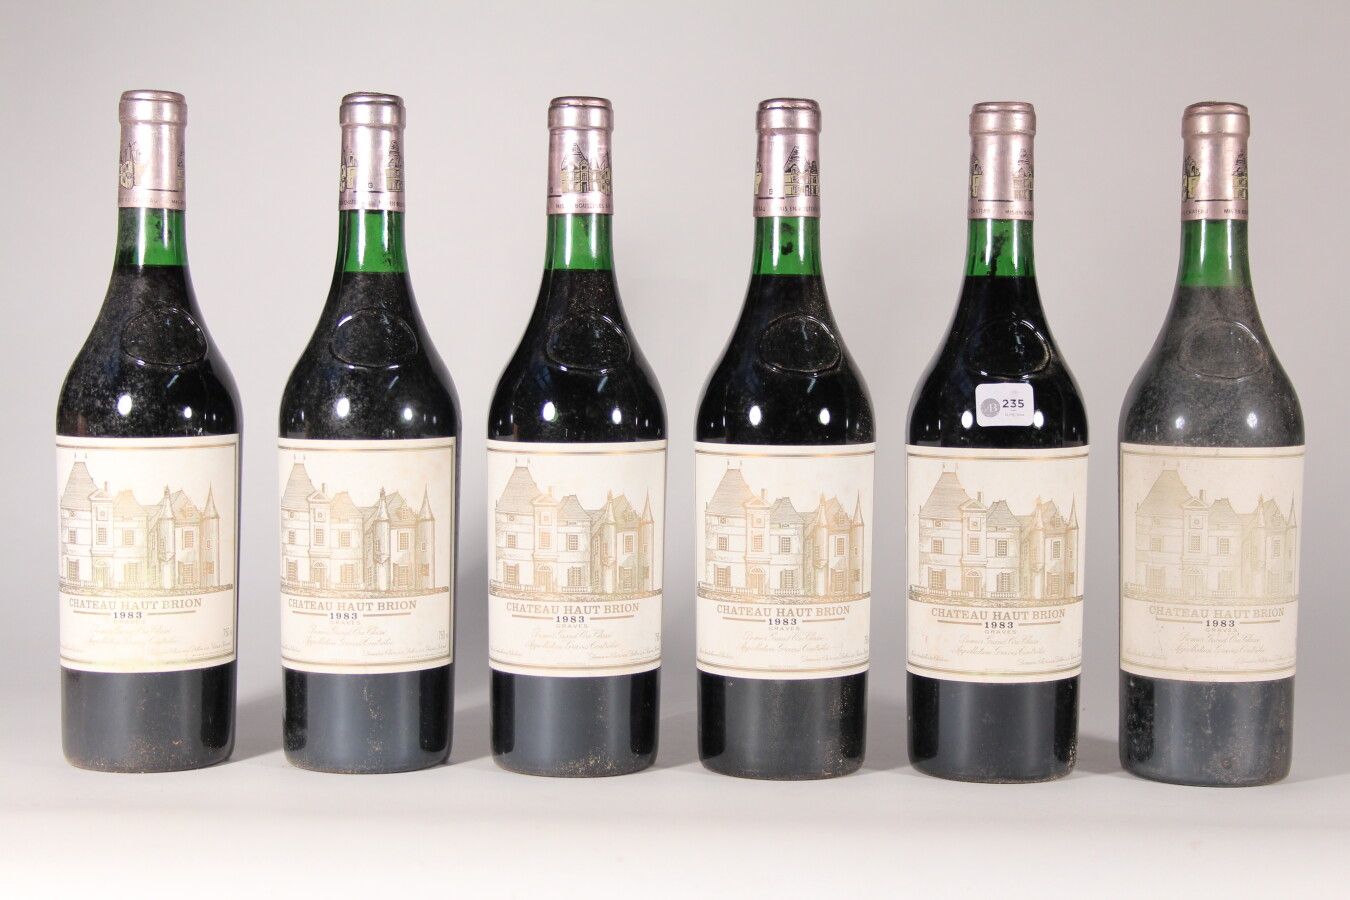 Null 1983 - Château Haut Brion

Pessac-Léognan Rosso - 6 bottiglie